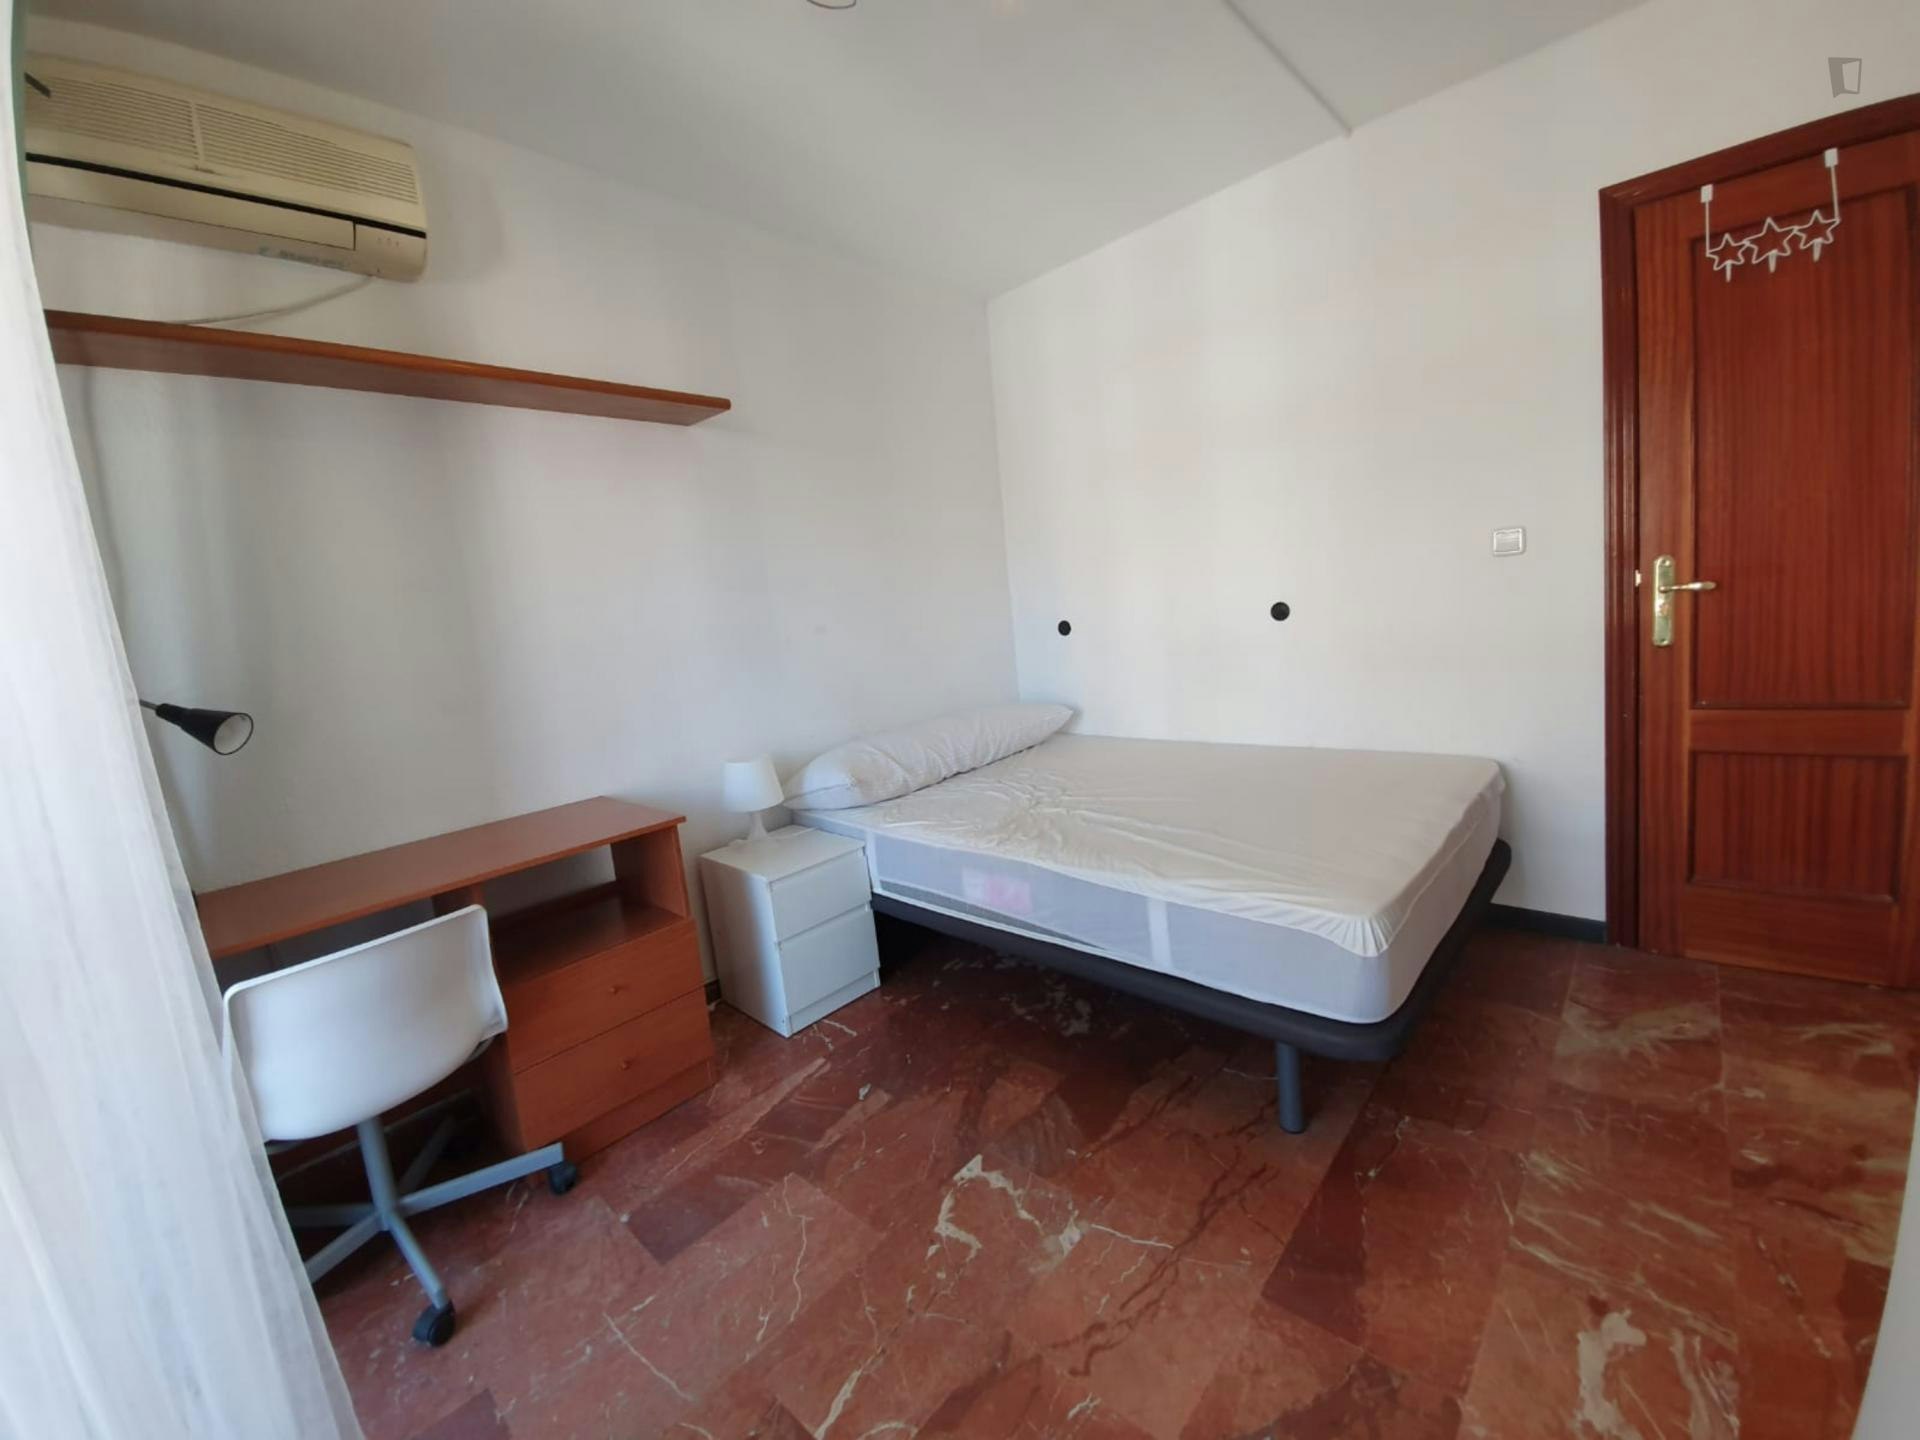 Breezy double bedroom in Camino de Ronda